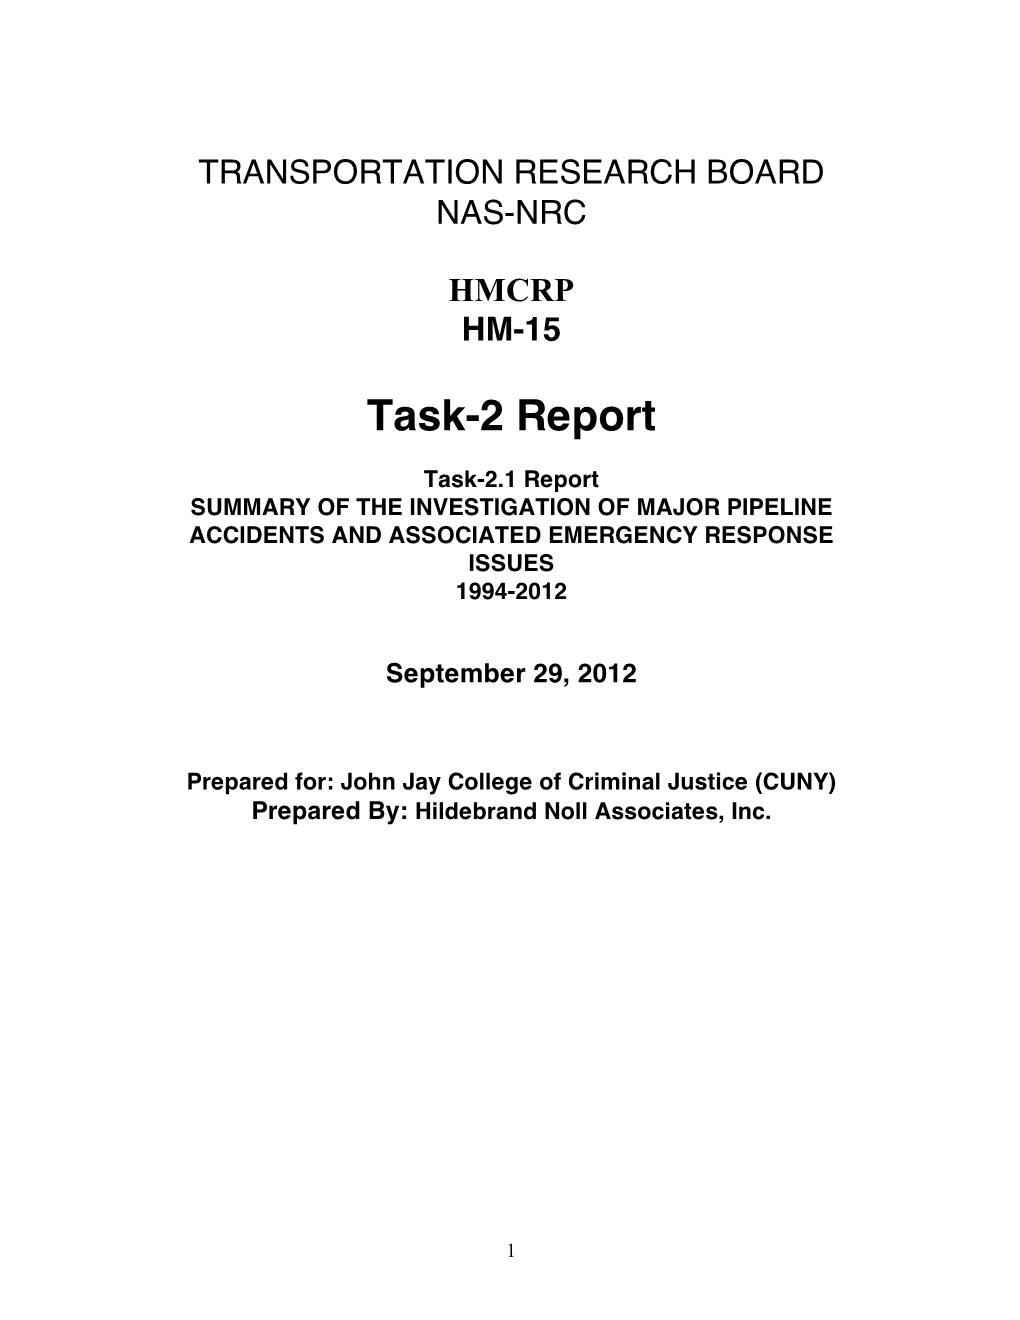 Task-2 Report